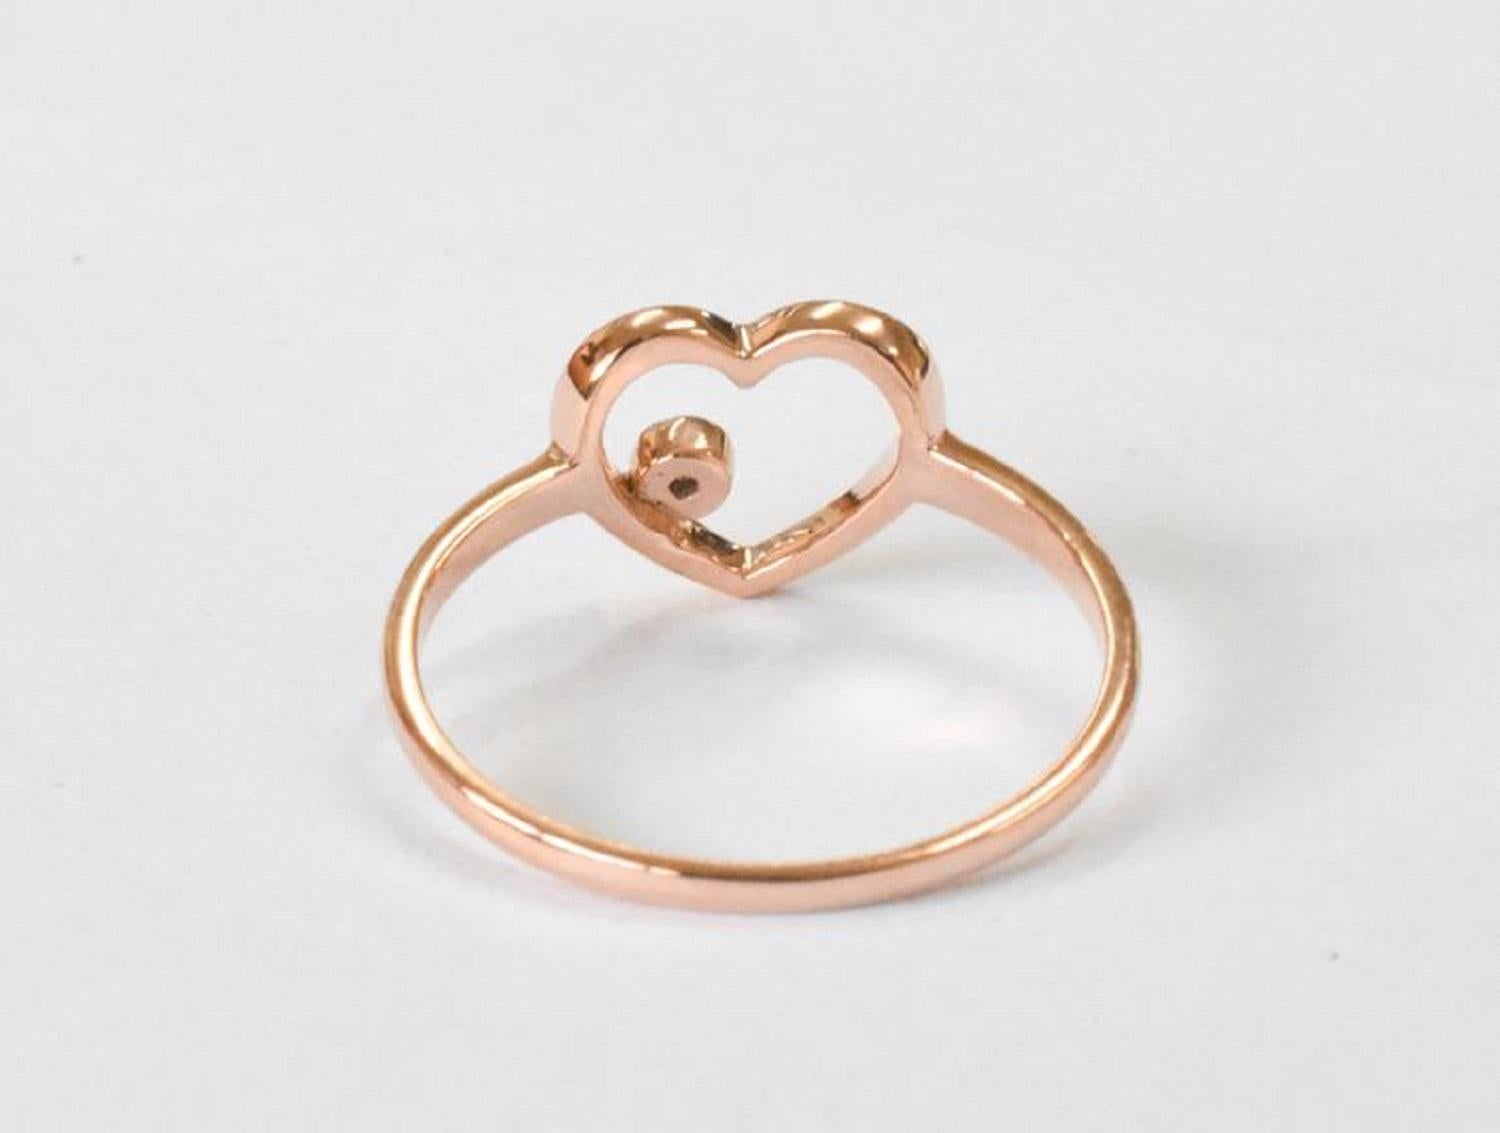 For Sale:  18k Rose Gold Diamond Heart Ring Minimal Heart Ring with Bezel Set Diamond 10